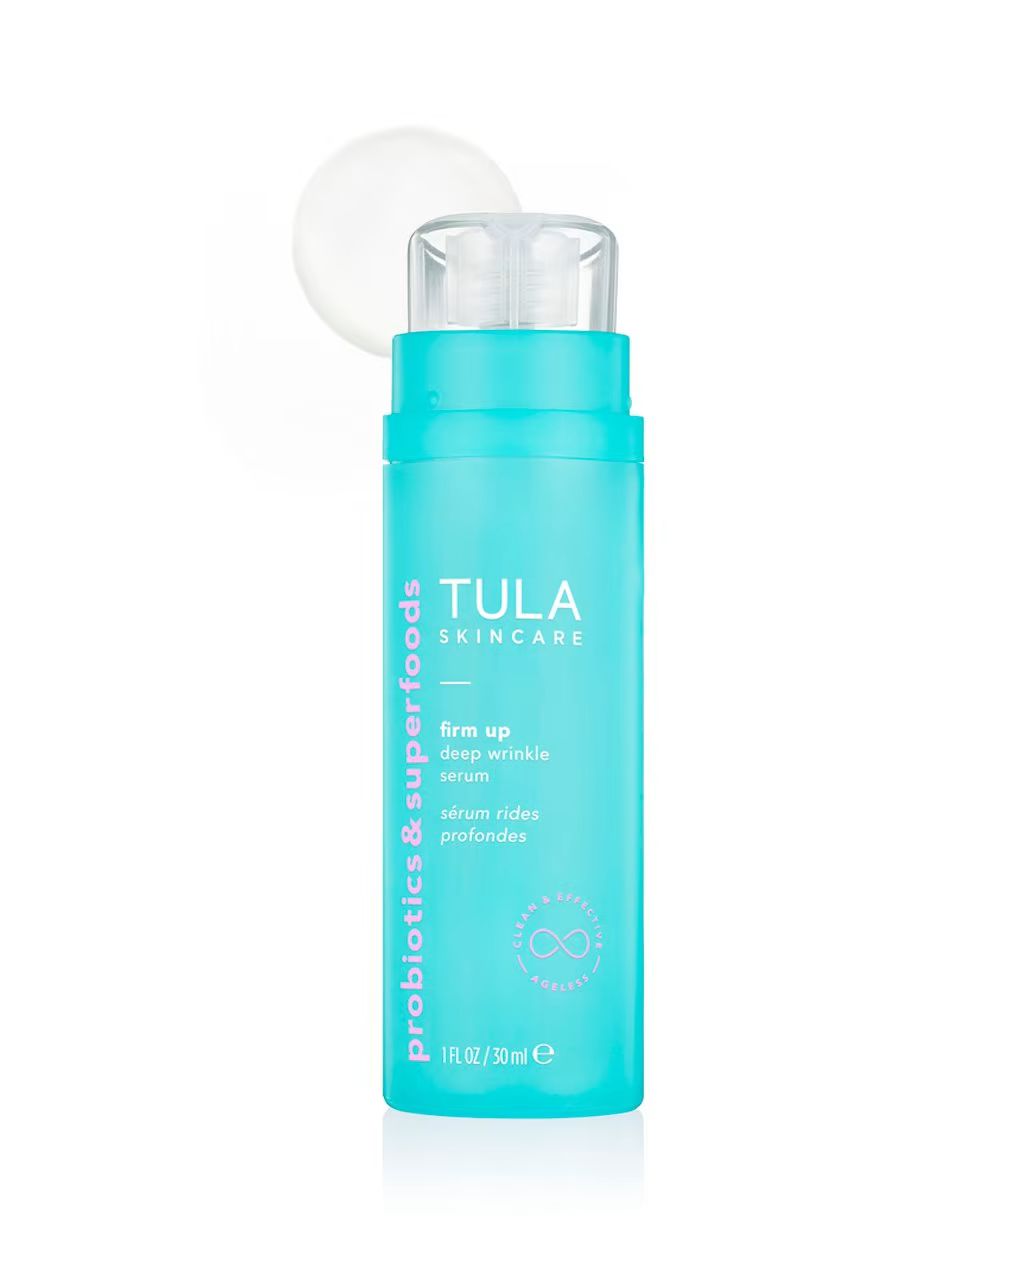 deep wrinkle serum | Tula Skincare